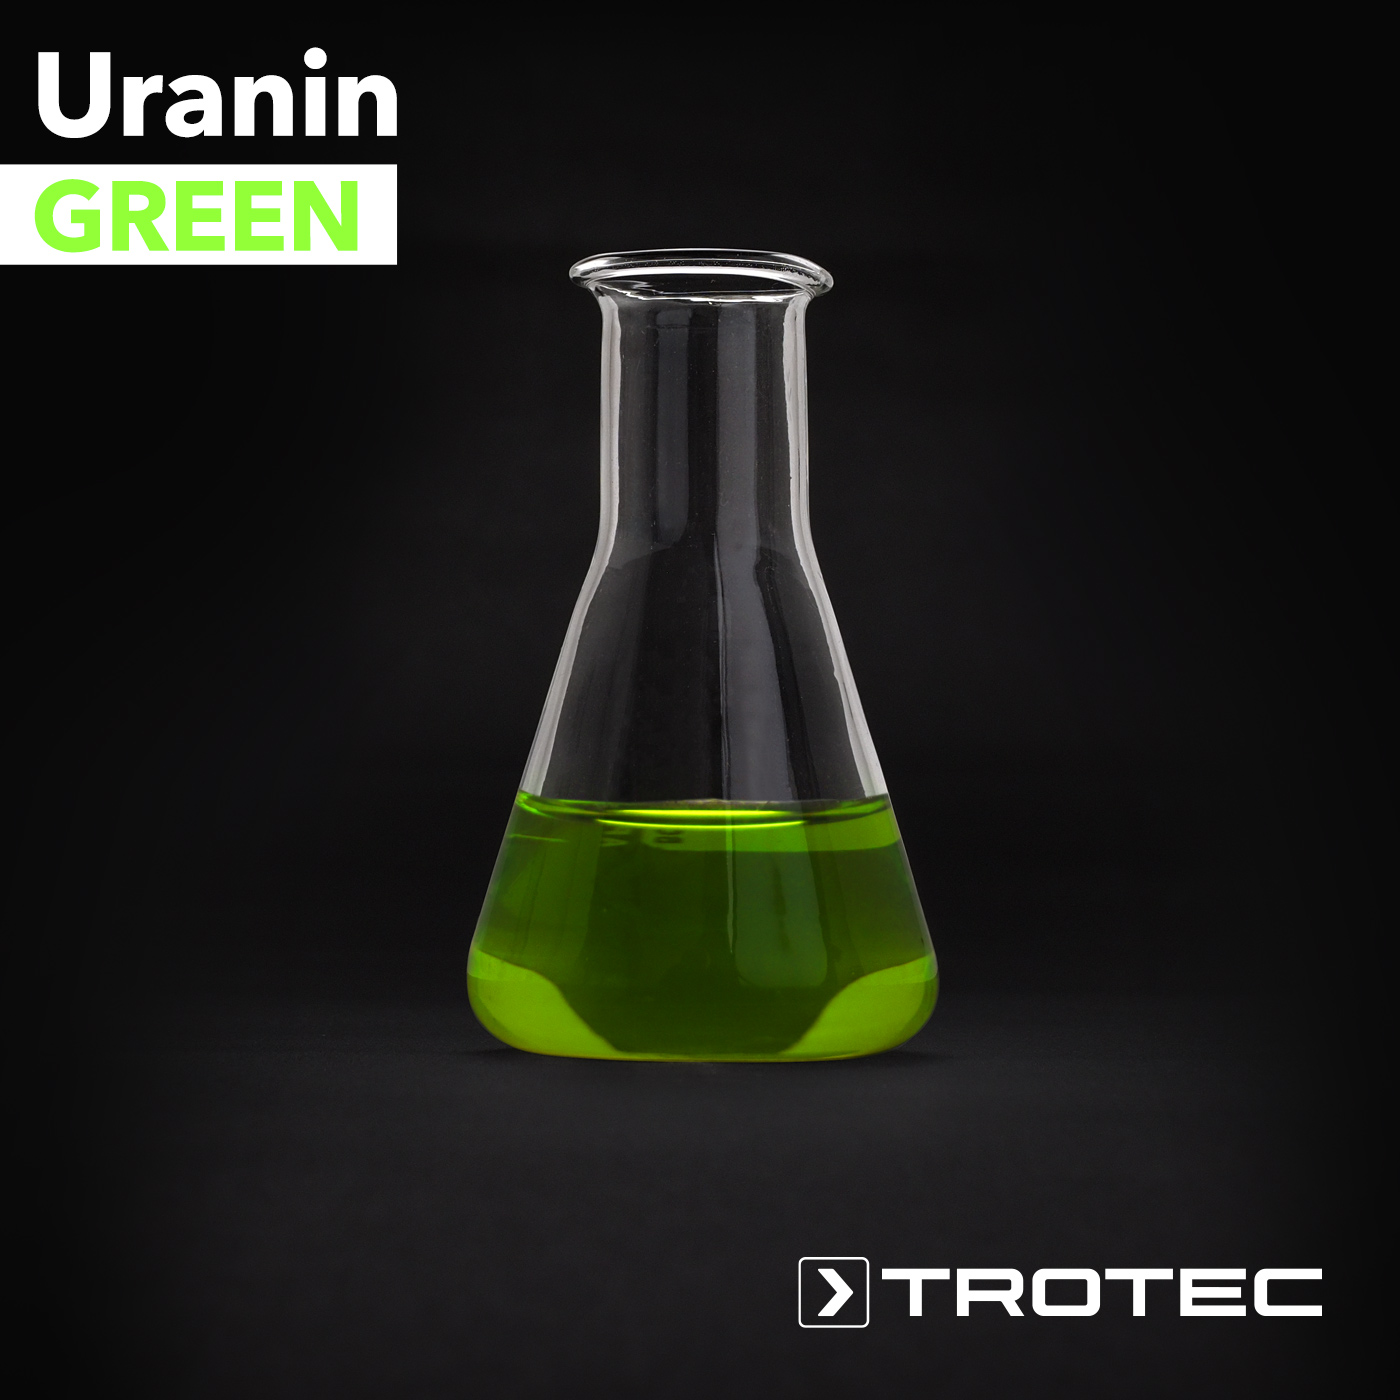 https://fr.trotec.com/images/colorant-fluorescent-uranin-green-7d88.jpg